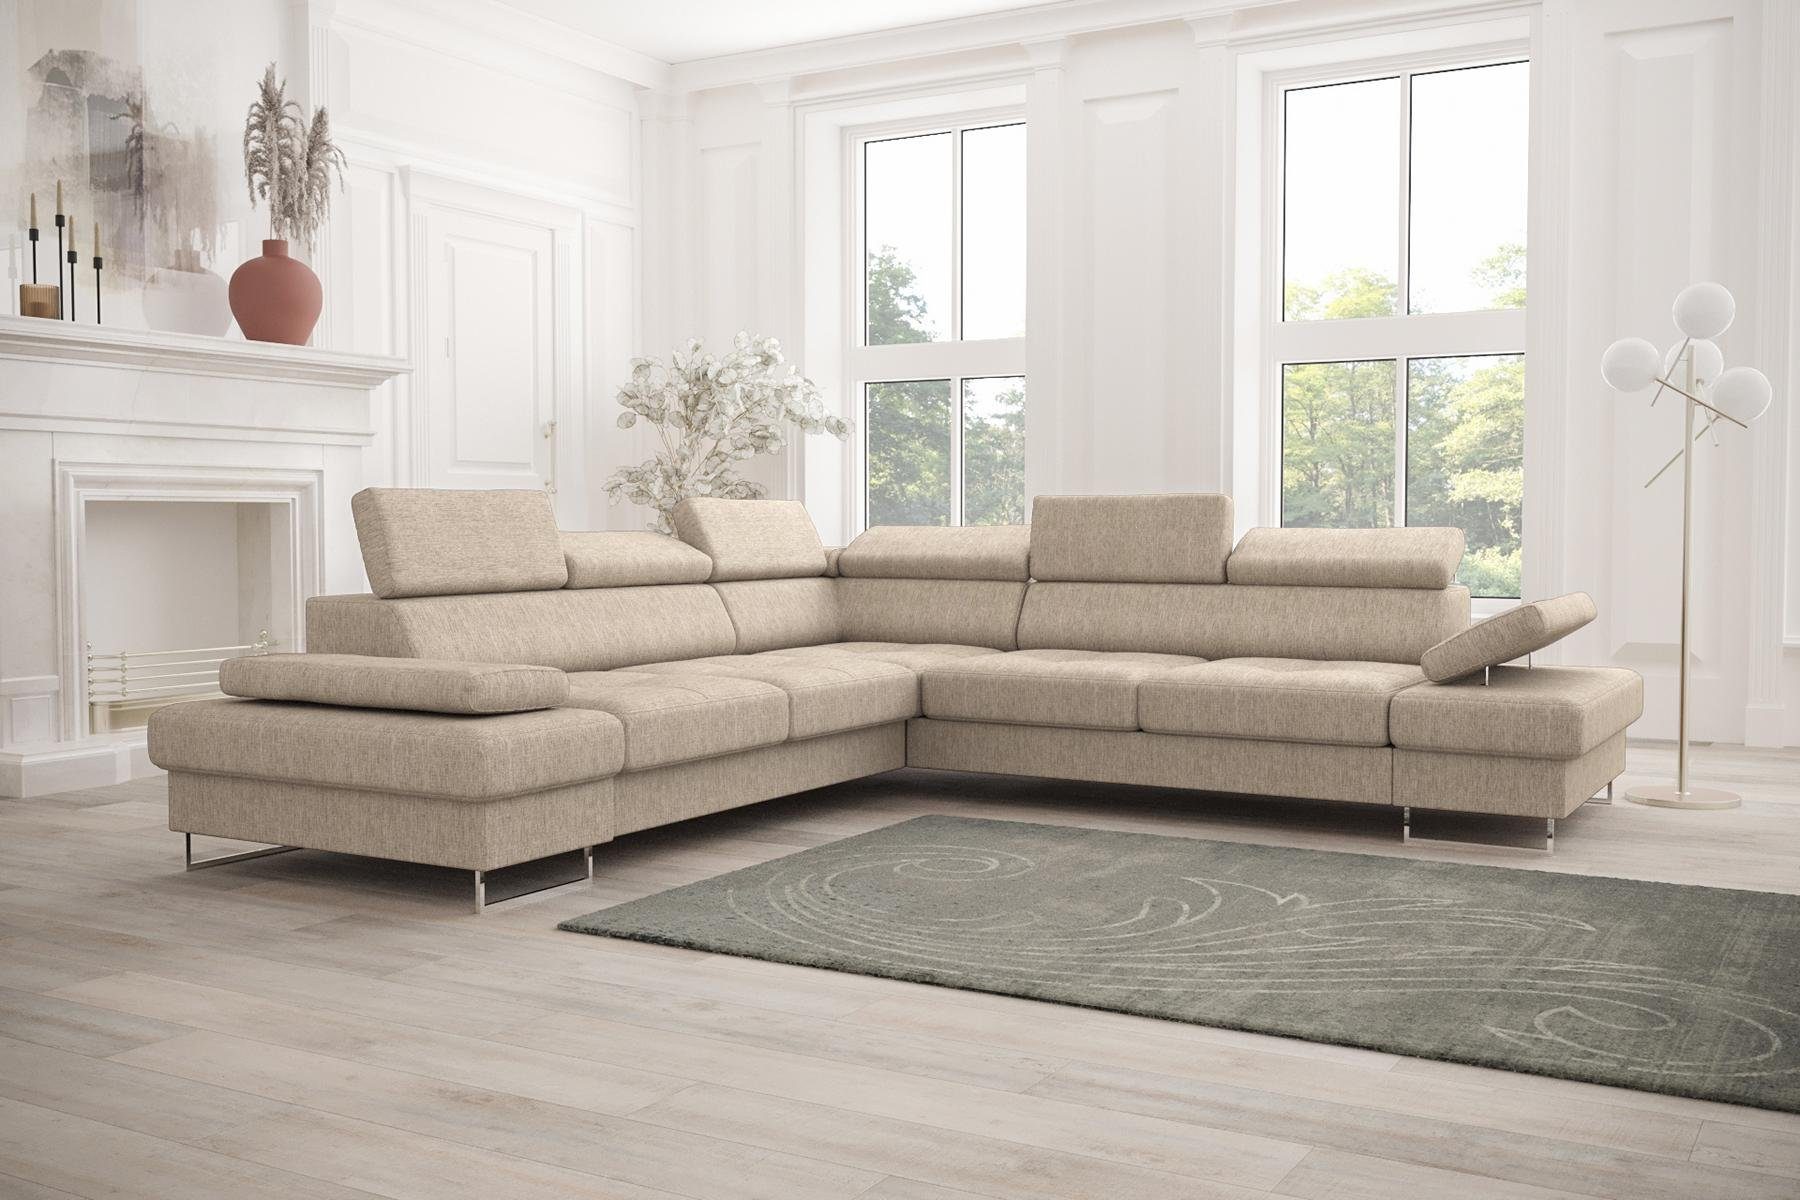 JVmoebel Ecksofa Sofa Wohnzimmer Made Couch in Polsterung Europe L-Form Design, Beige